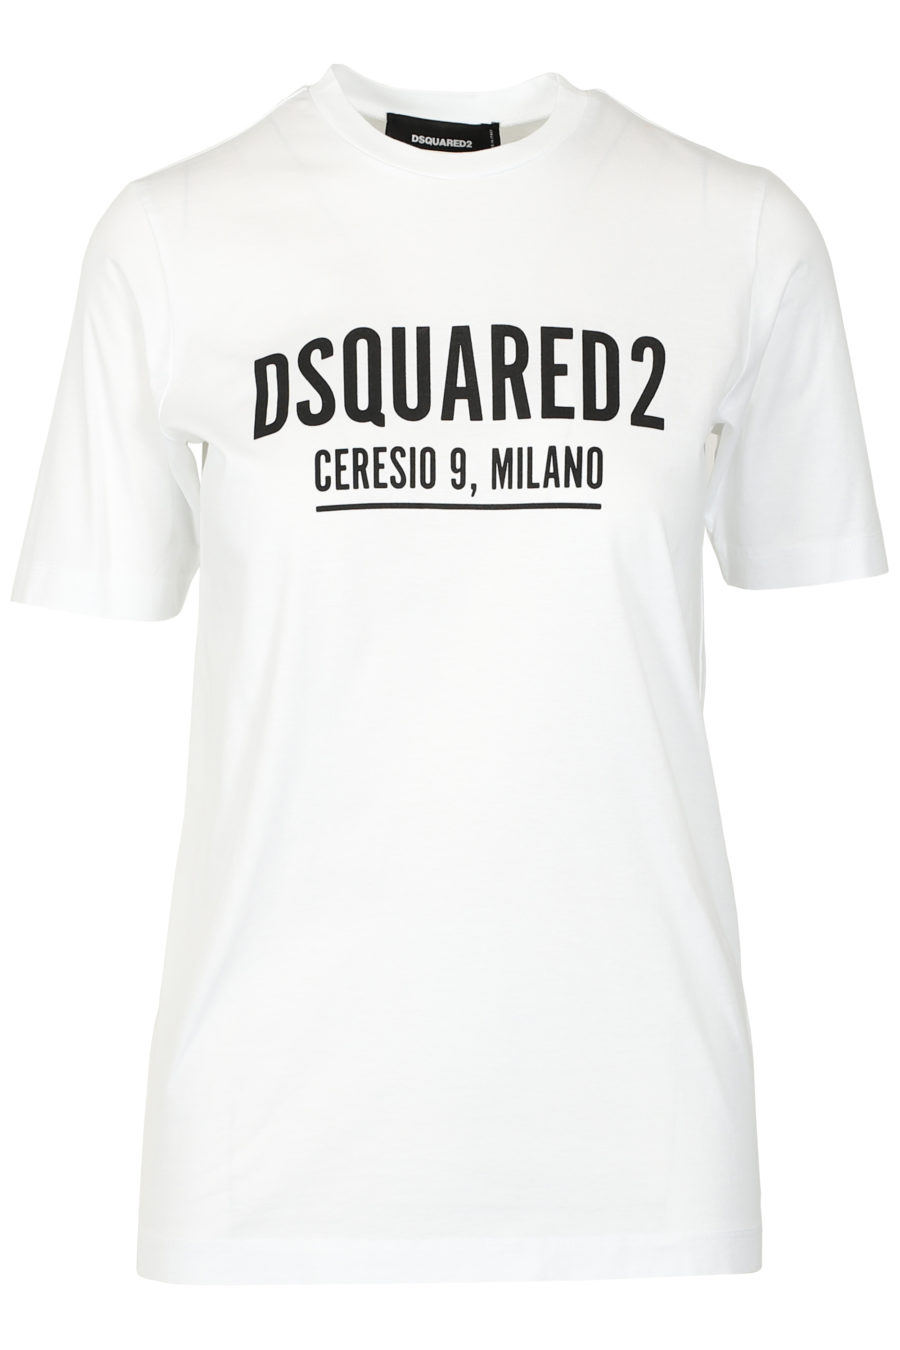 Ceresio Milano" weißes T-Shirt mit kurzen Ärmeln - IMG 3274